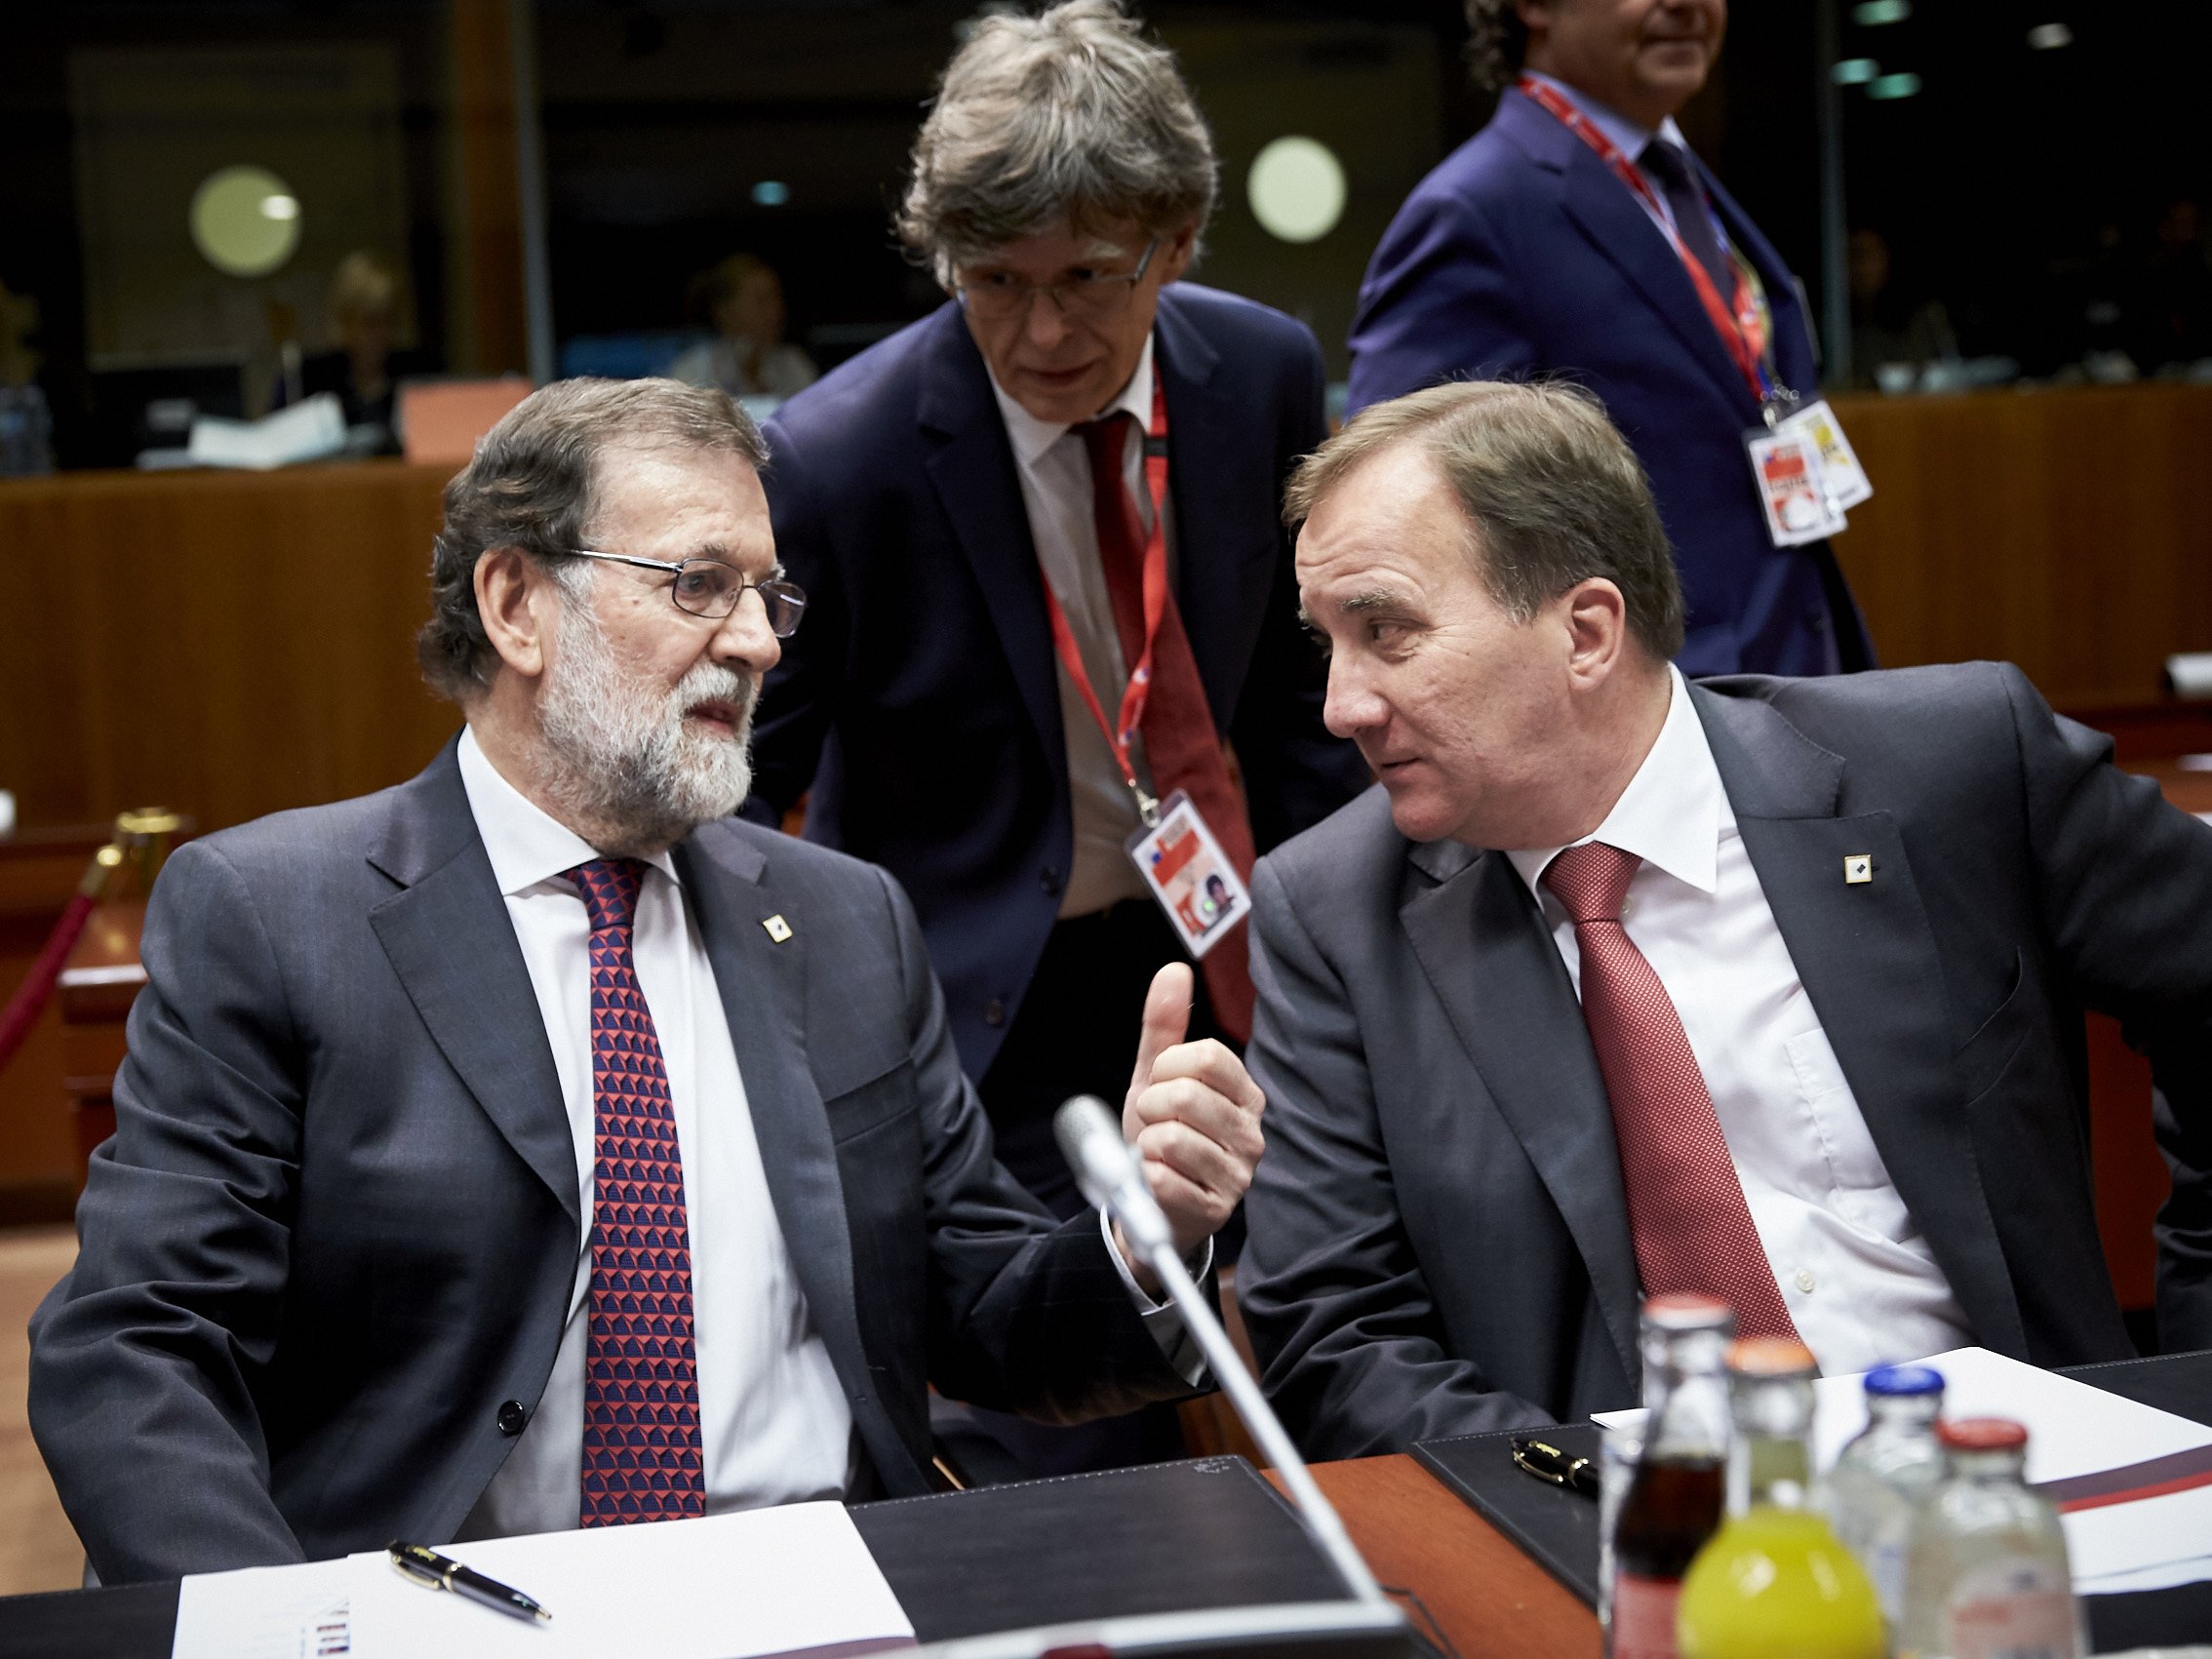 Rajoy fracassa en l'intent que Europa obviï Catalunya